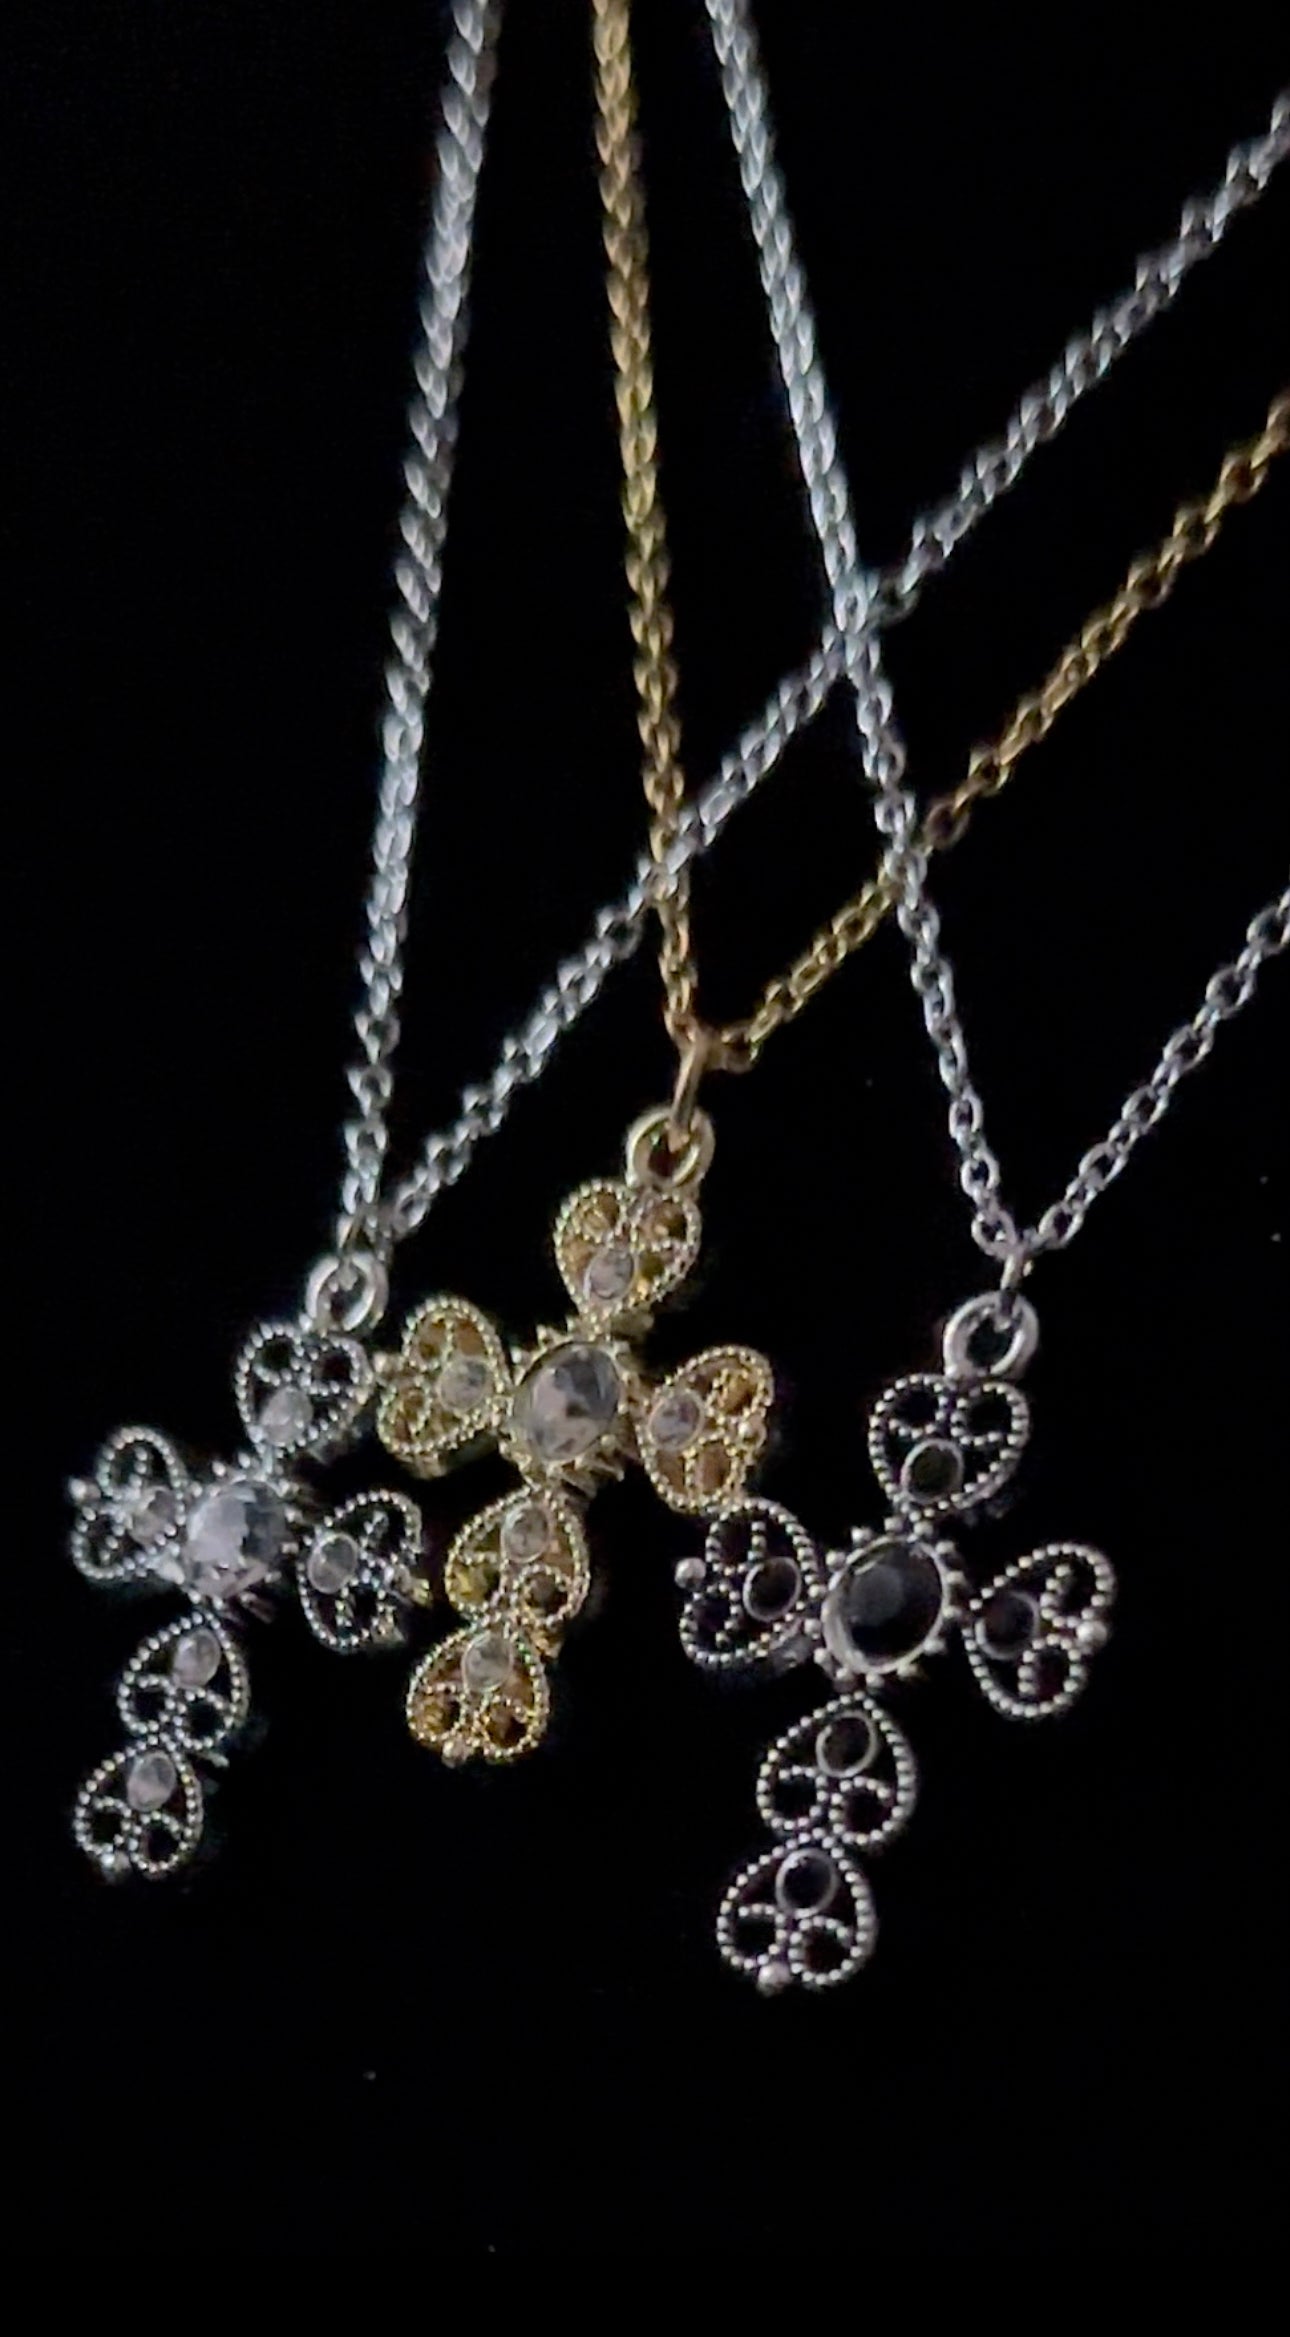 Decorative Cross Pendant Necklace